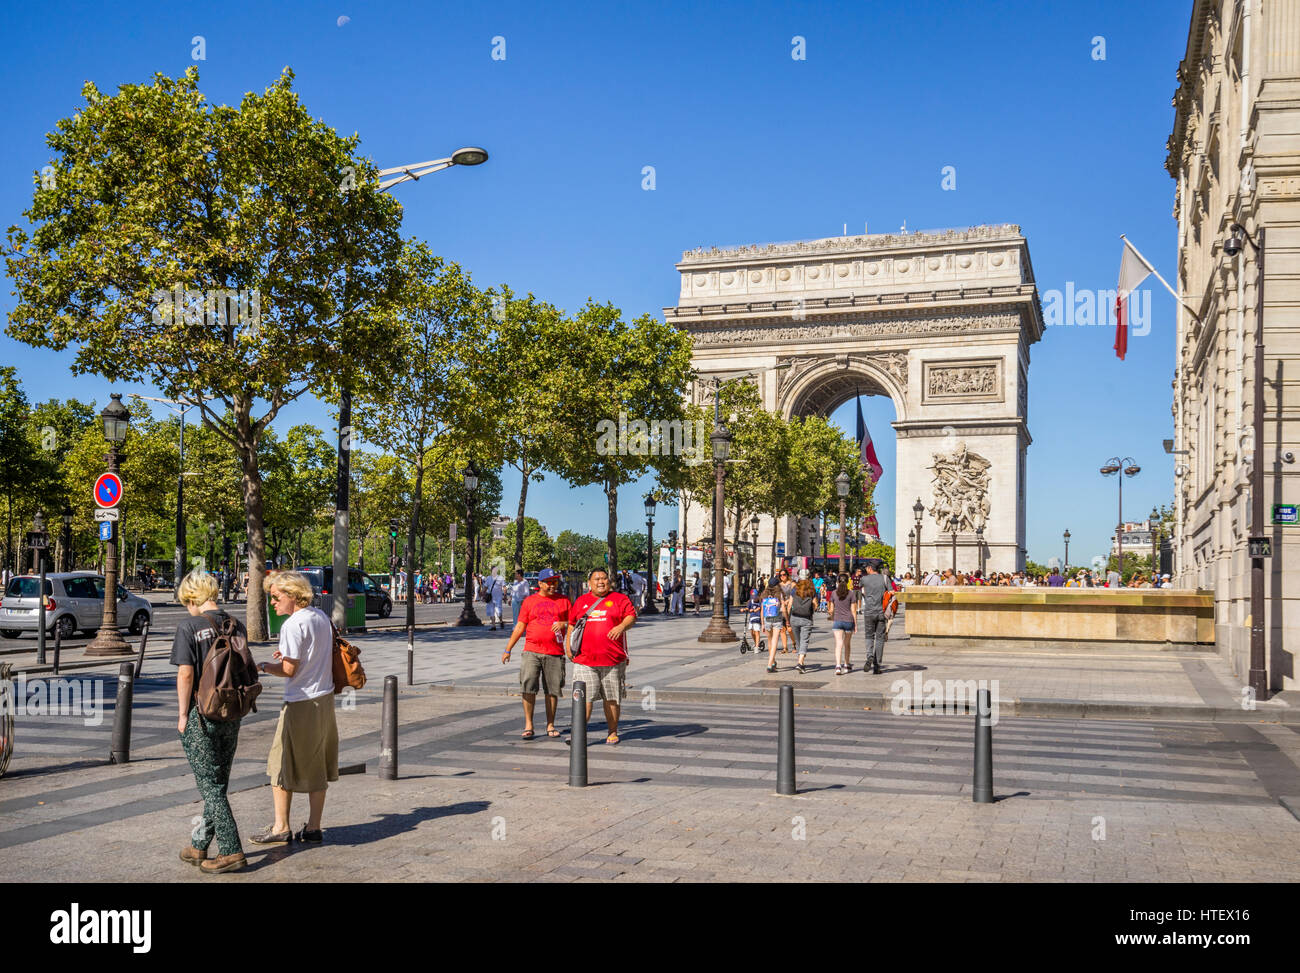 France, Ile-de-France, Paris, Arc de Triomphe de l'Étoile seen from Champs Elysées Stock Photo